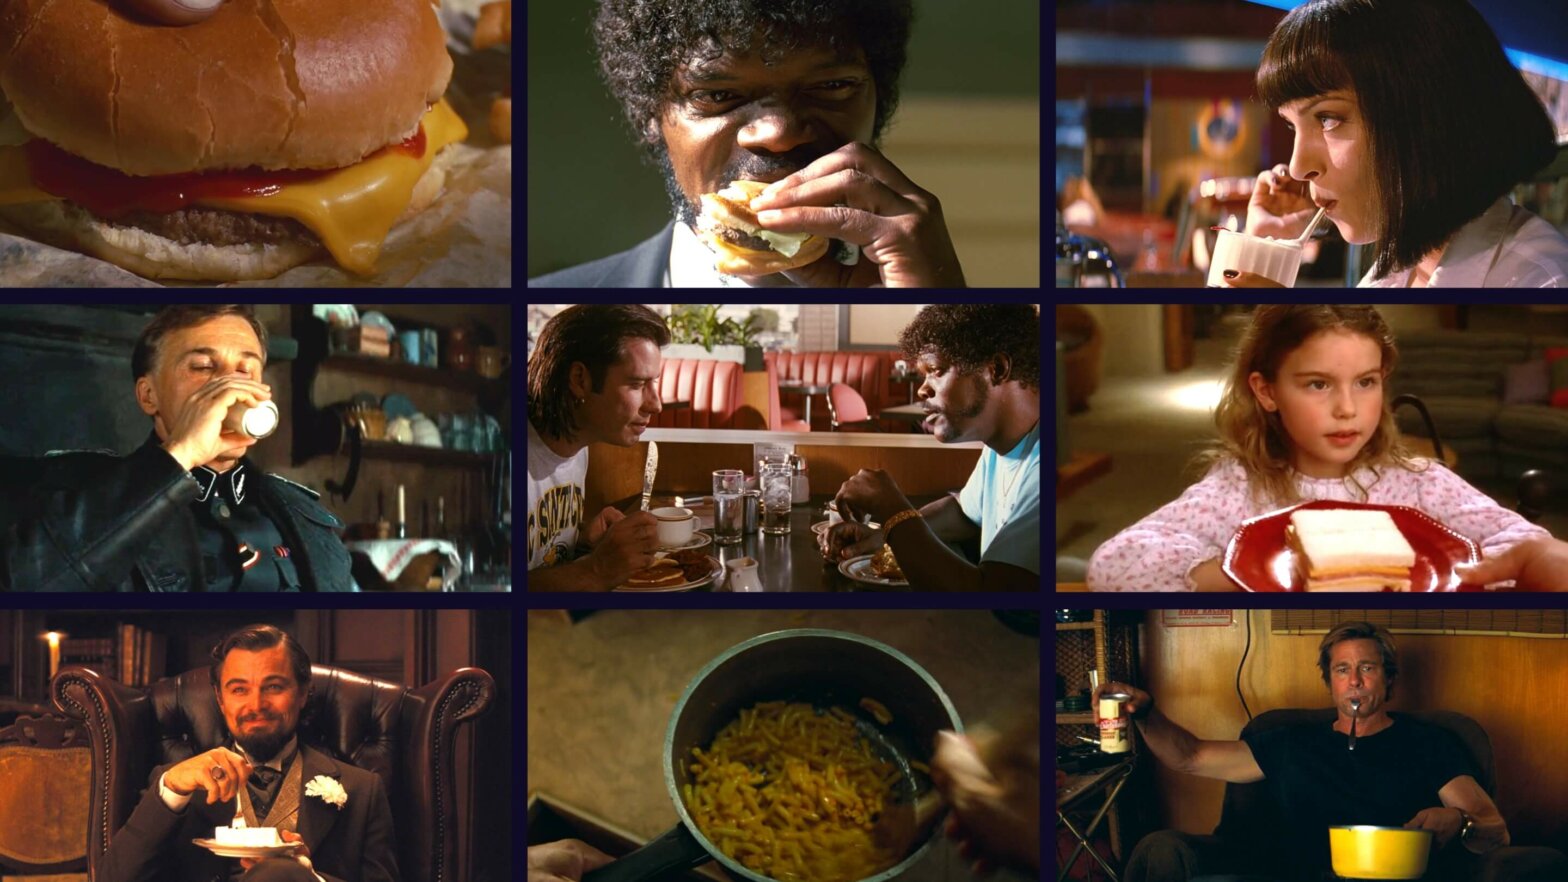 Quentin Tarantino Food Scenes Explained